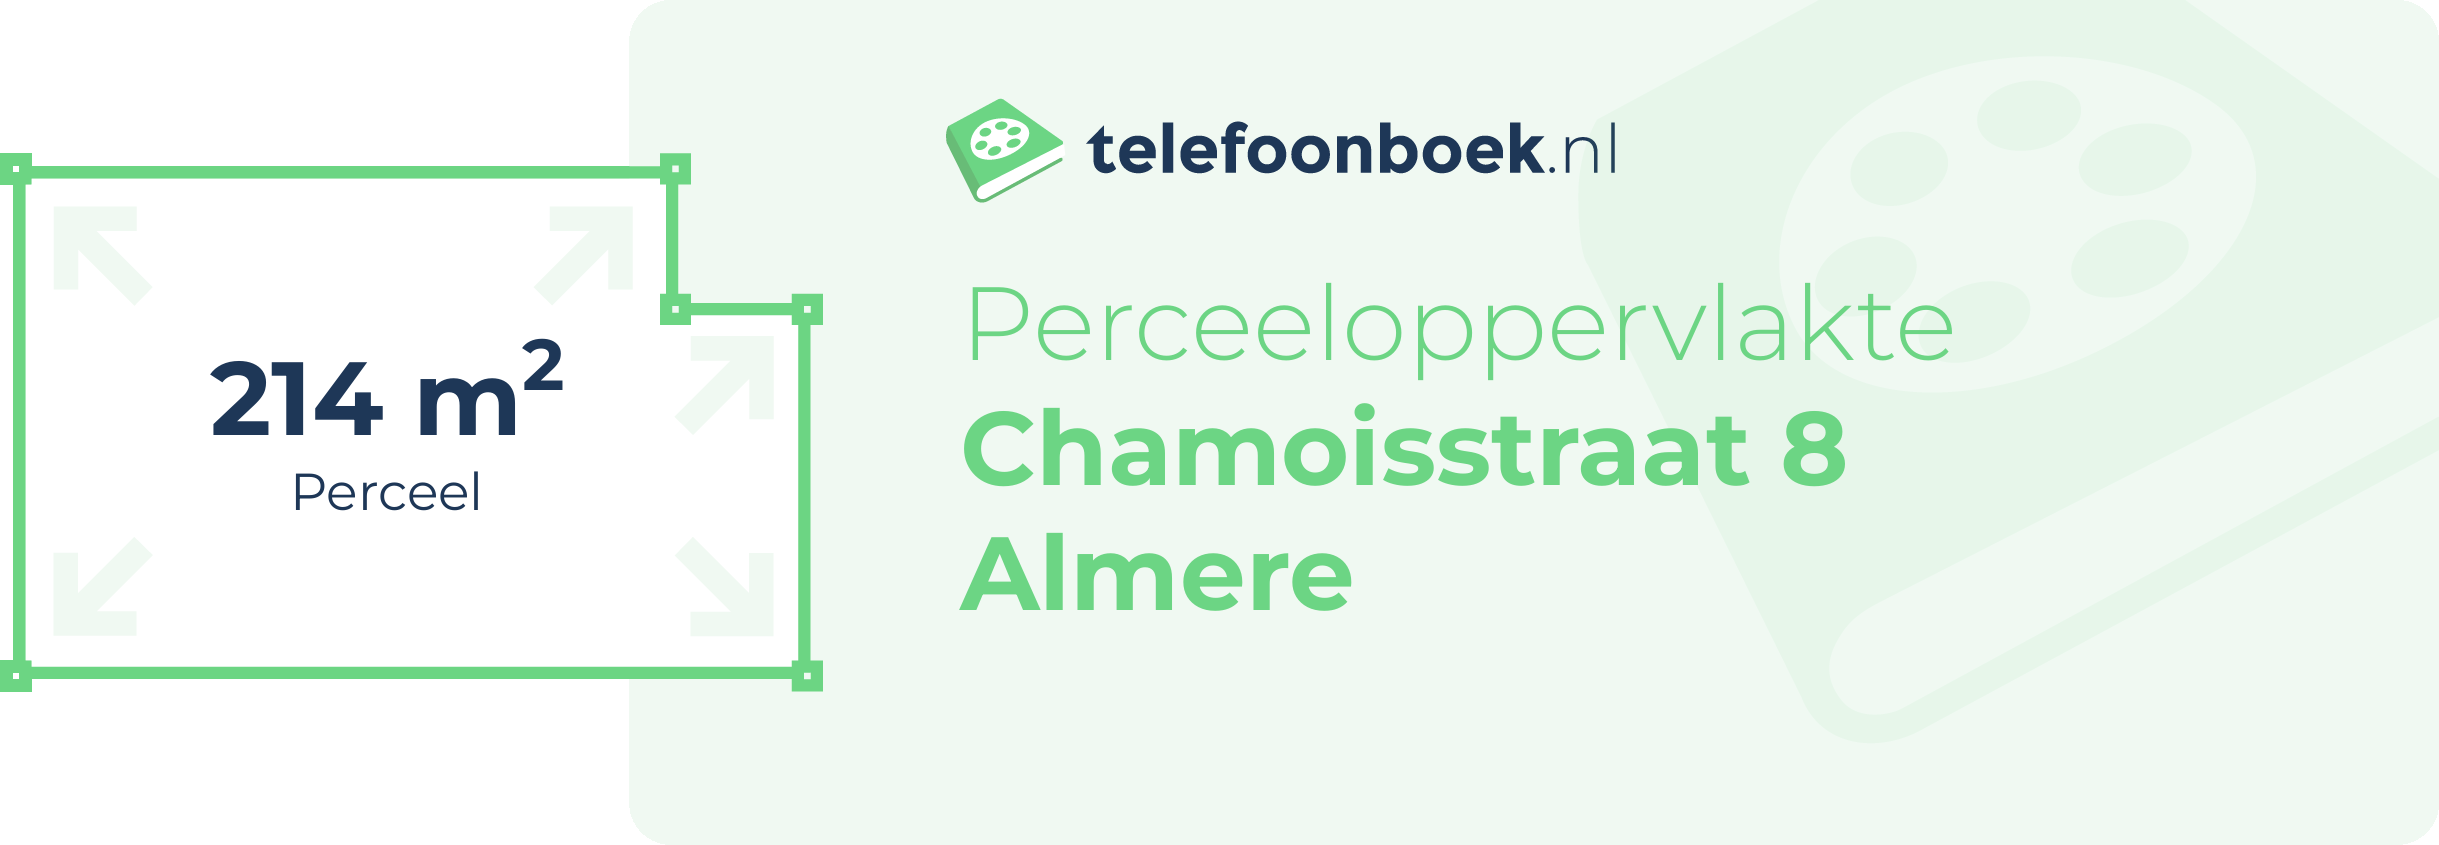 Perceeloppervlakte Chamoisstraat 8 Almere